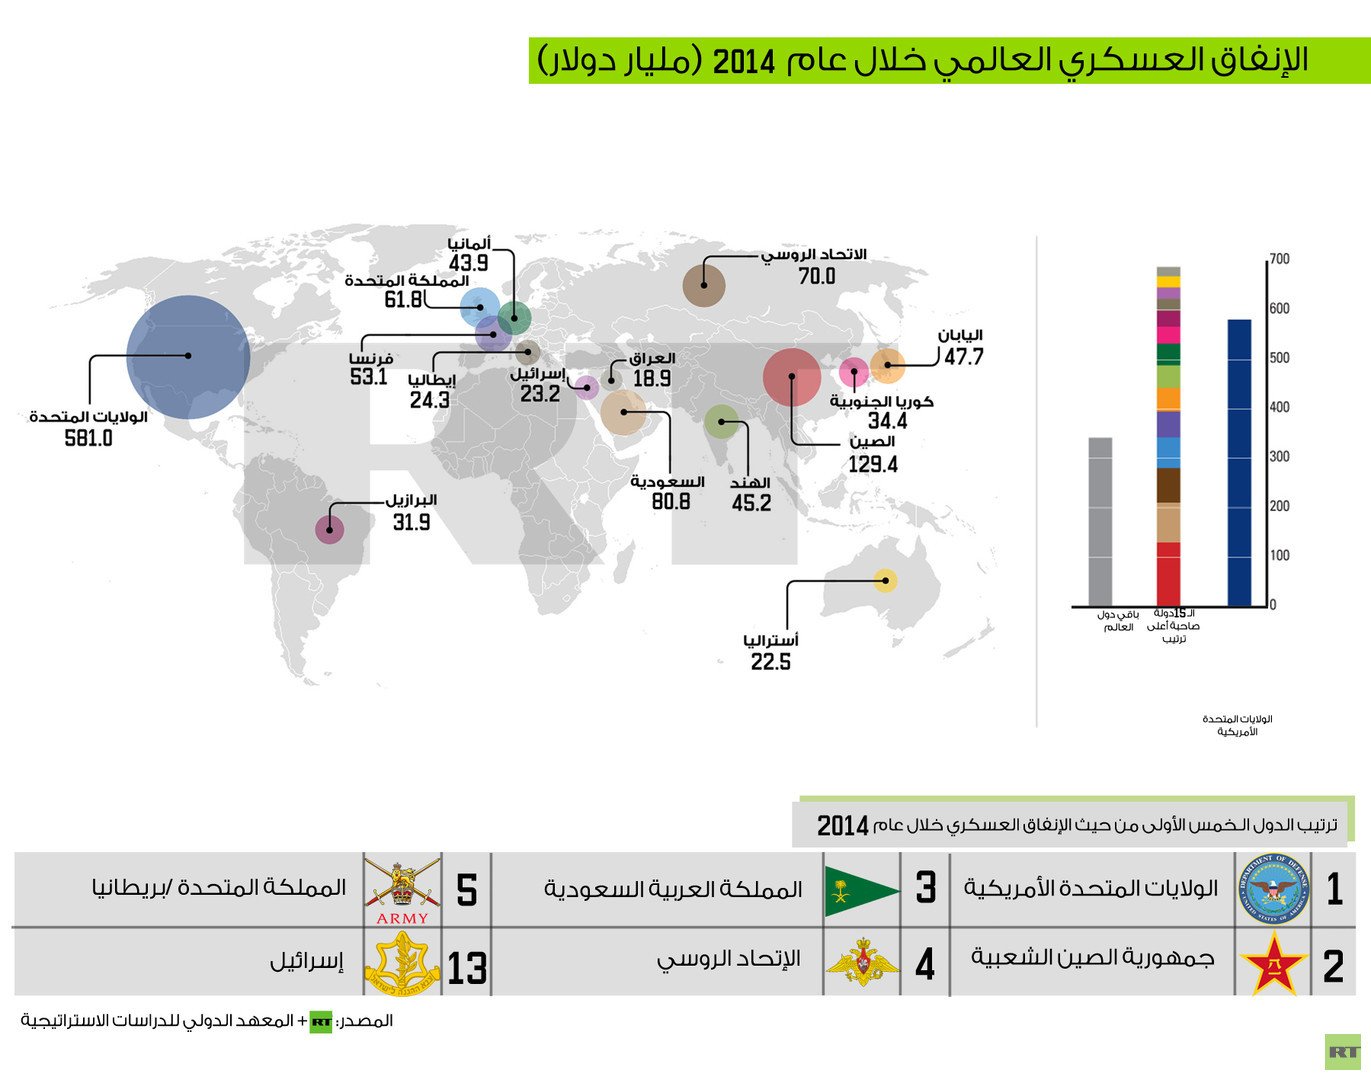  السعودية في صدارة الدول العربية الأكثر إنفاقا عسكريا 